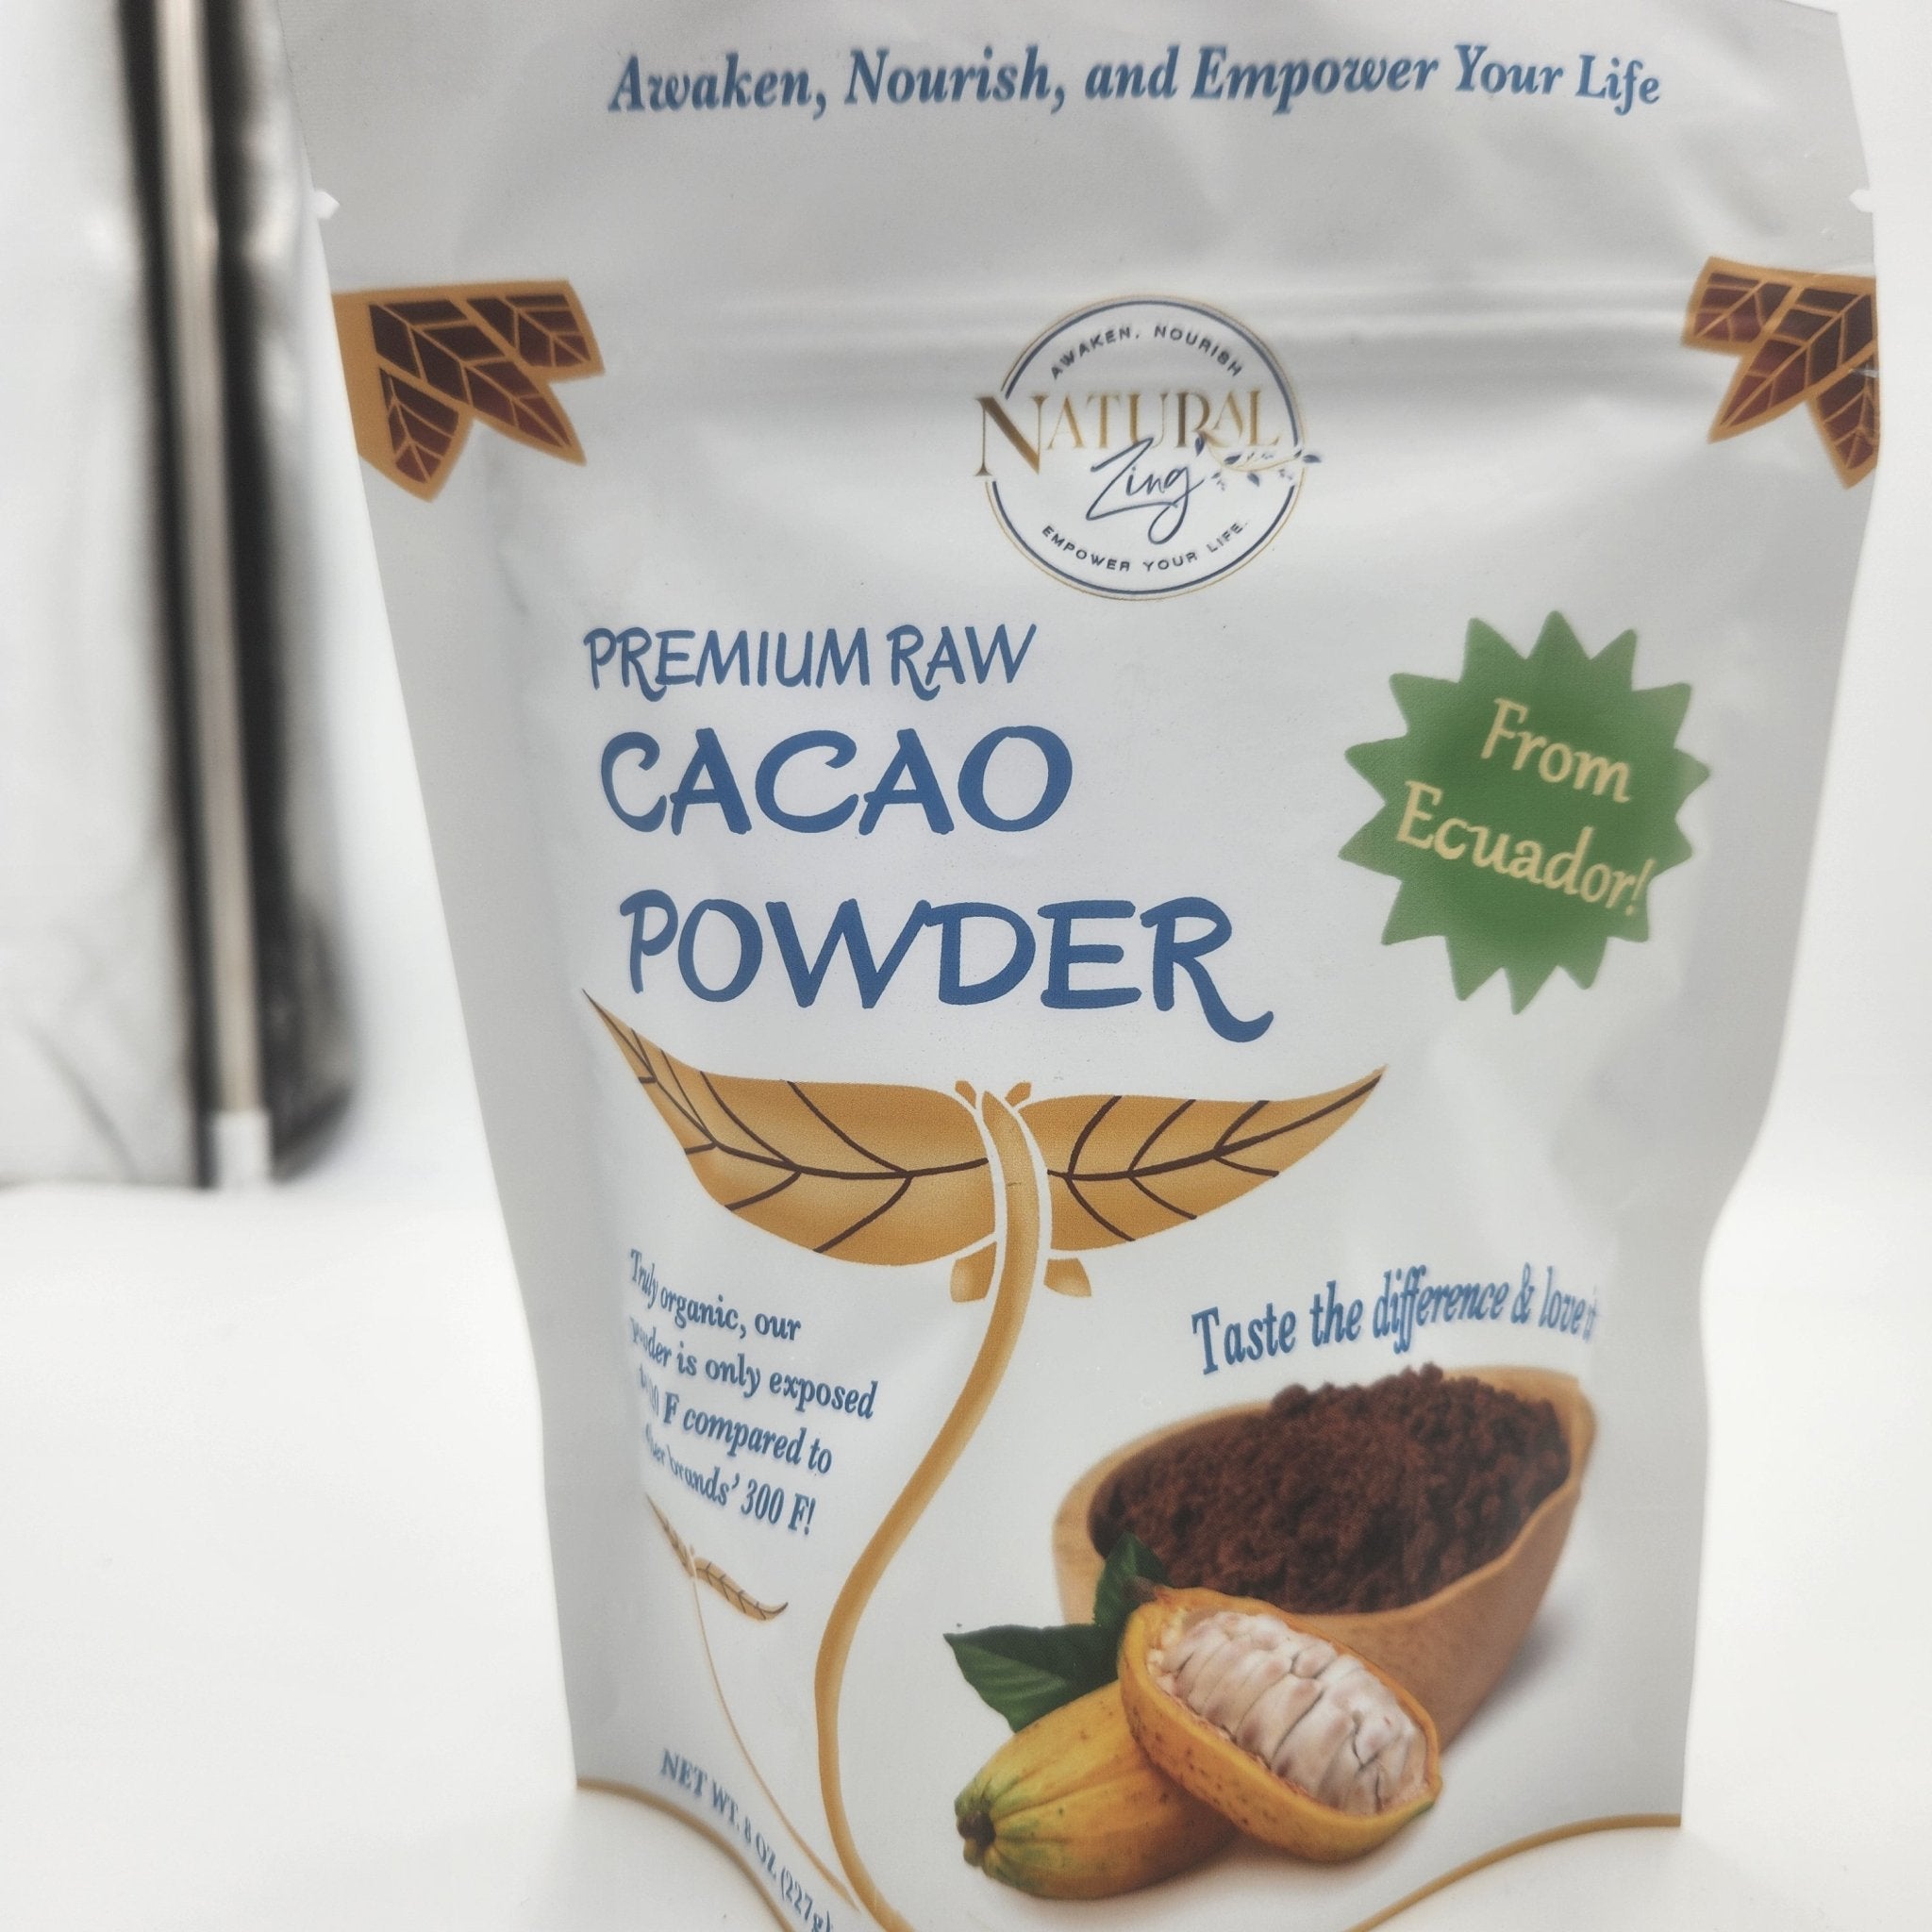 Raw Cacao Powder 8 oz - Criollo